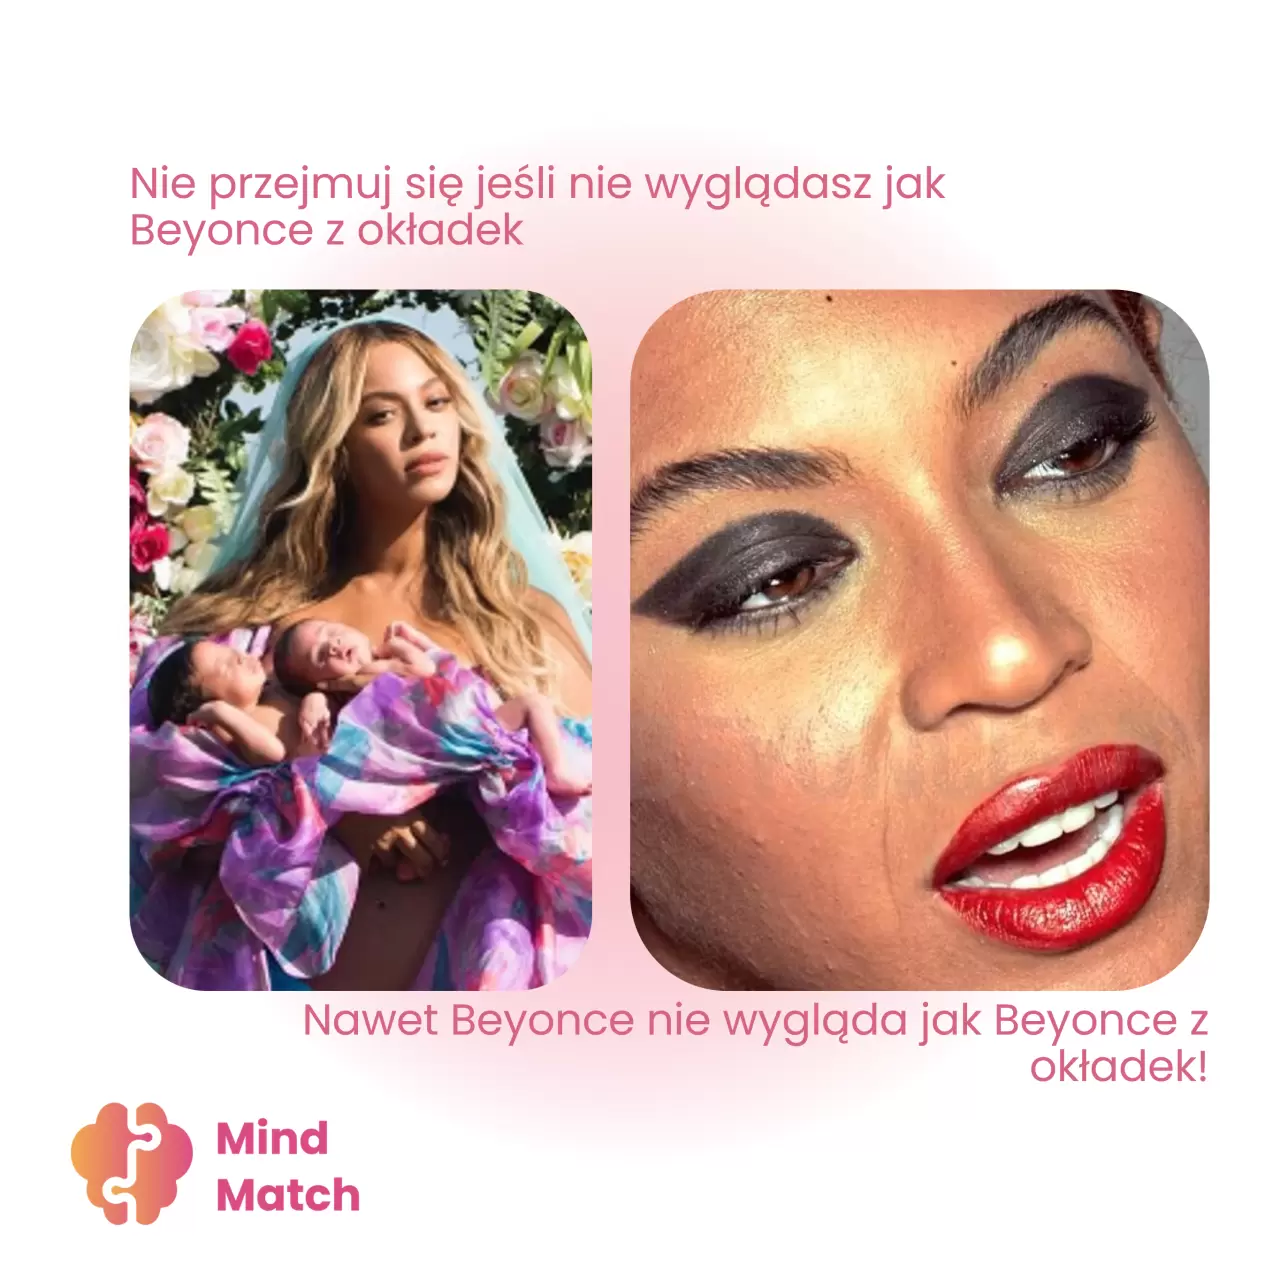 Social Media, a zdrowie psychiczne. Nie przejmuj się jeśli nie wyglądasz jak Beyonce!